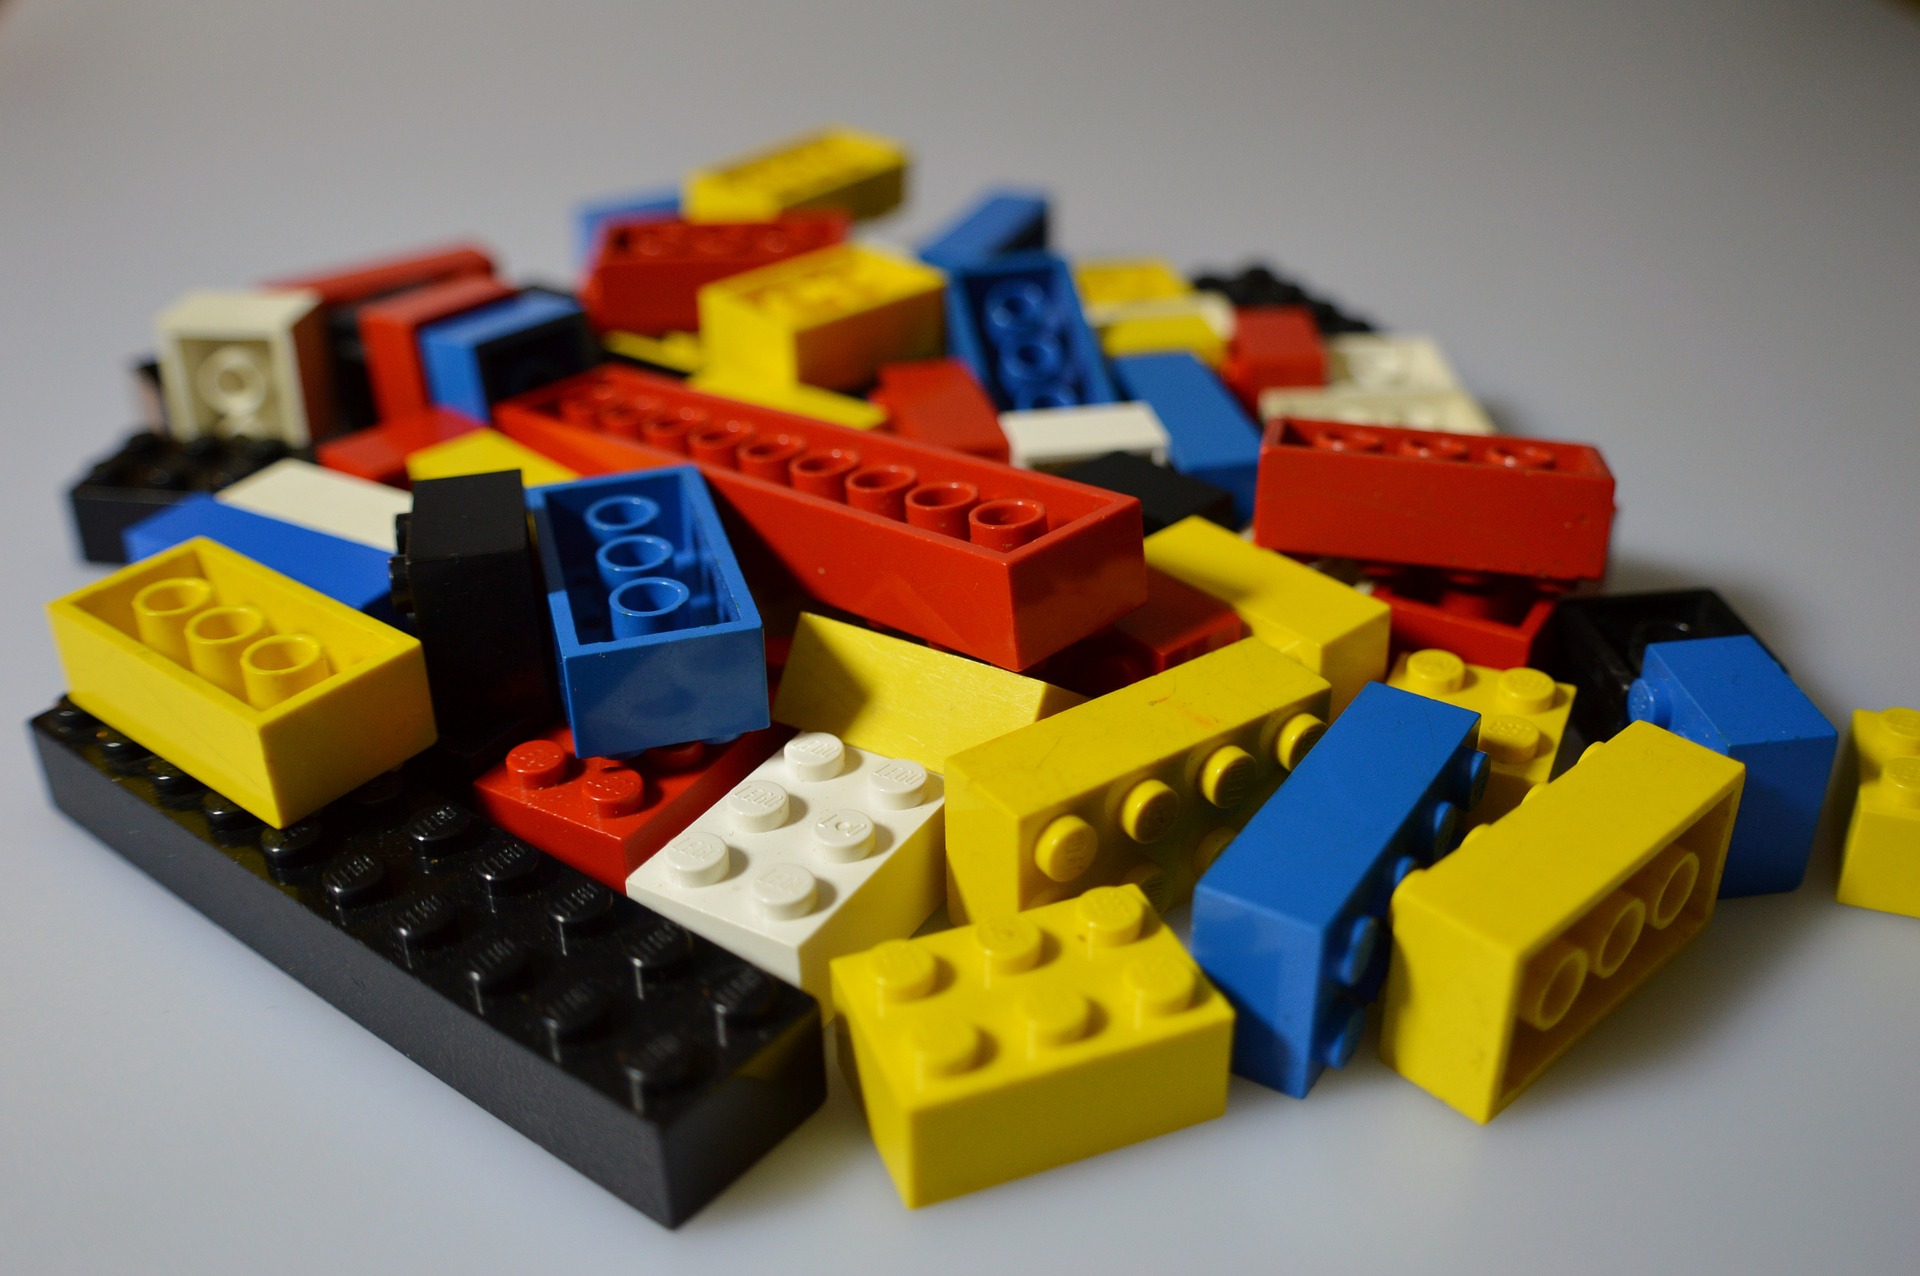 Modular building blocks